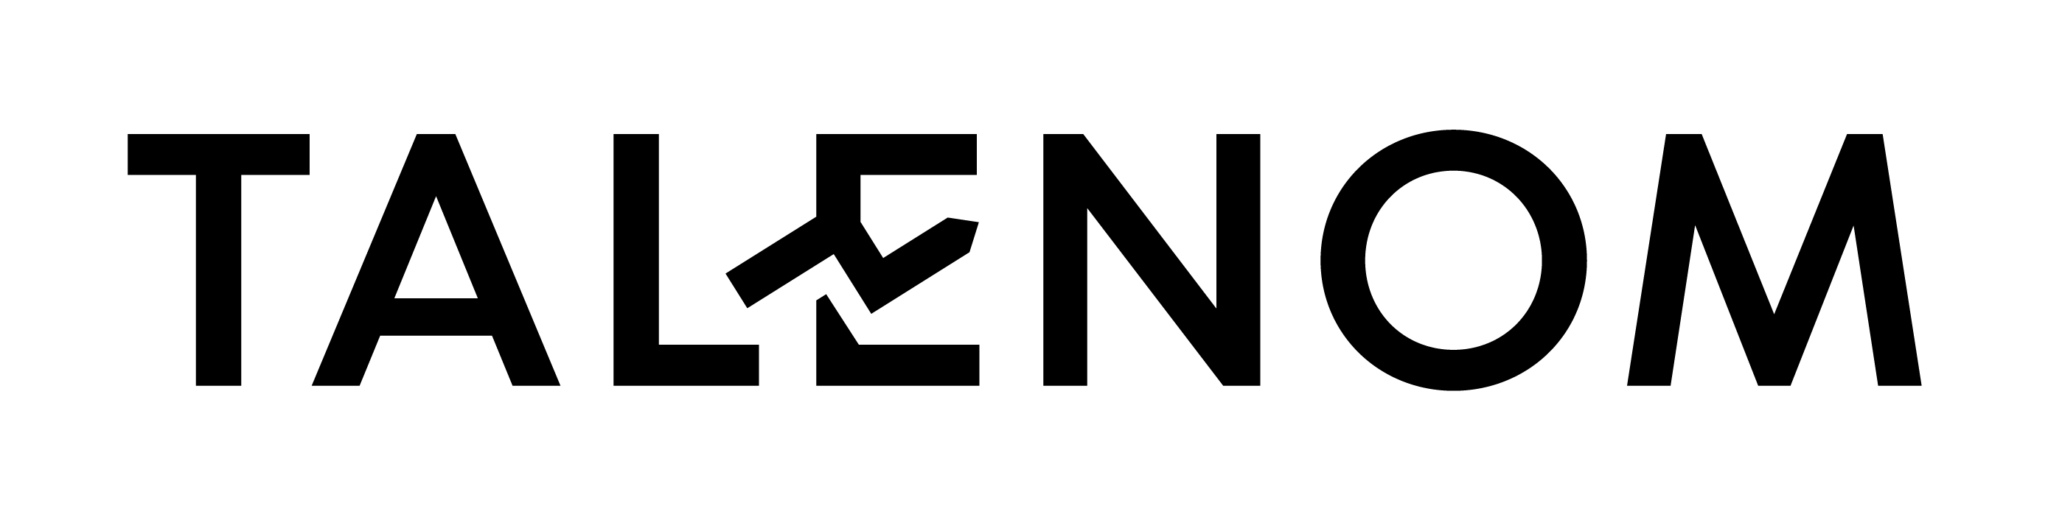 talenom-logo